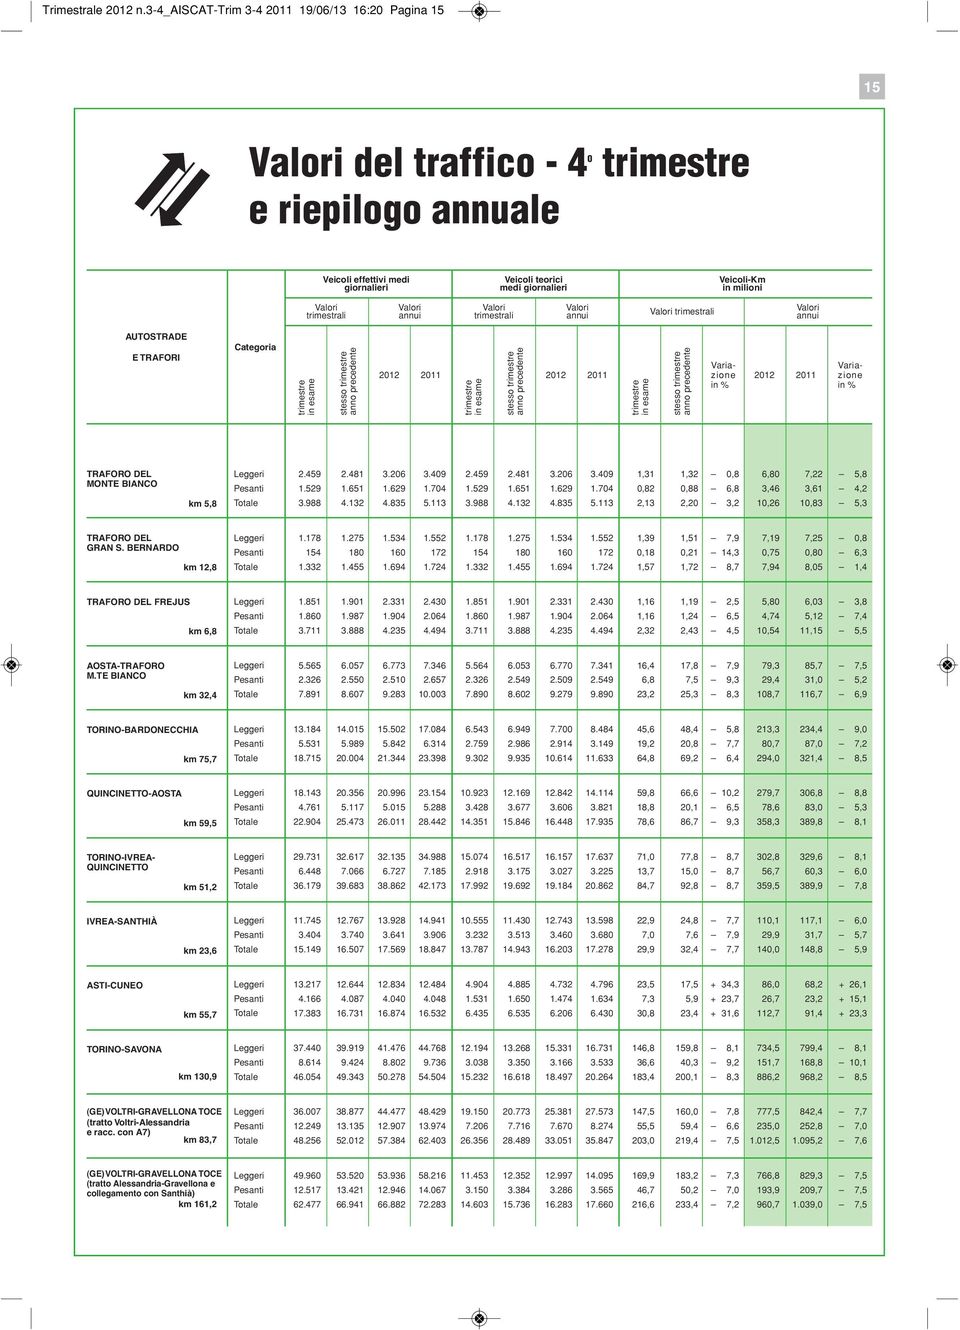 annui trimestrali annui Categoria stesso stesso stesso Variazione in % Variazione in % TRAFORO DEL MONTE BIANCO km 5,8.459.48 3.6 3.49.459.48 3.6 3.49,3,3,8 6,8 7, 5,8.59.65.69.